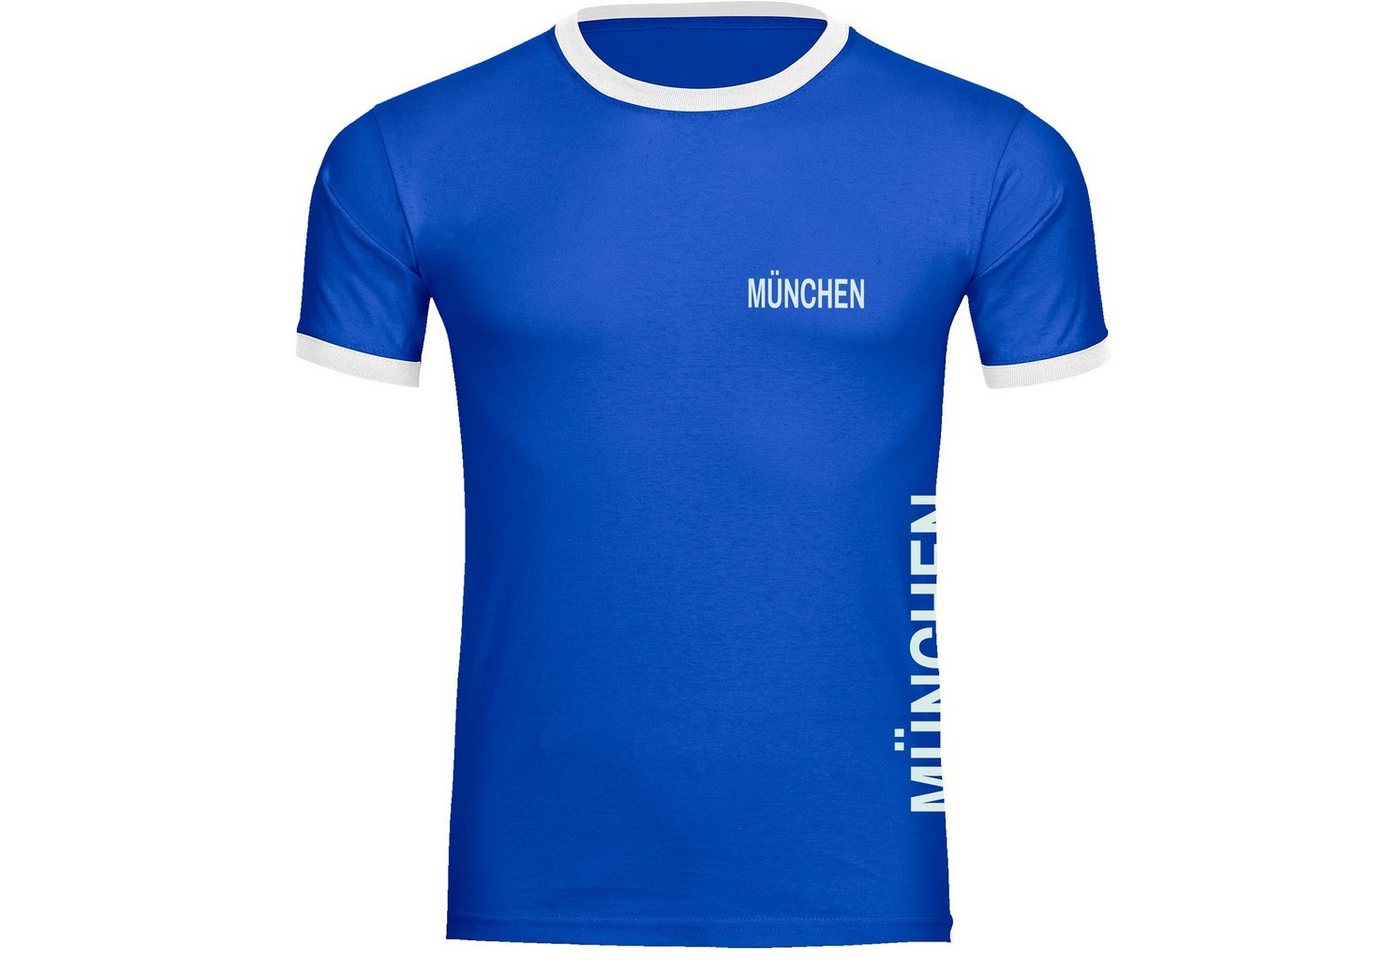 multifanshop T-Shirt Kontrast München blau - Brust & Seite - Männer von multifanshop